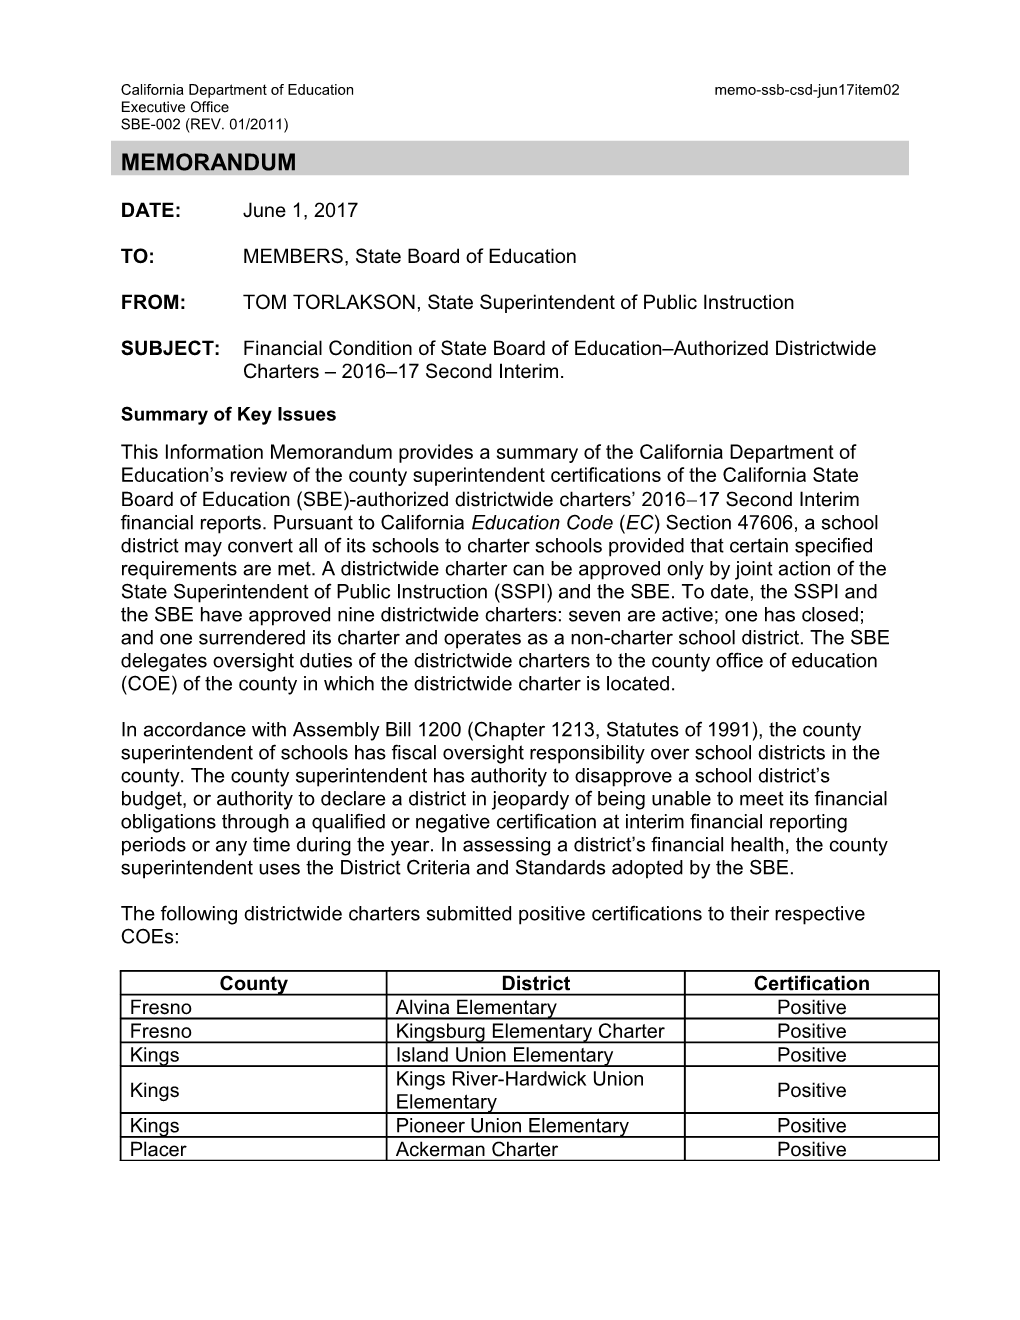 June 2017 Memo CSD Item 02 - Information Memorandum (CA State Board of Education)